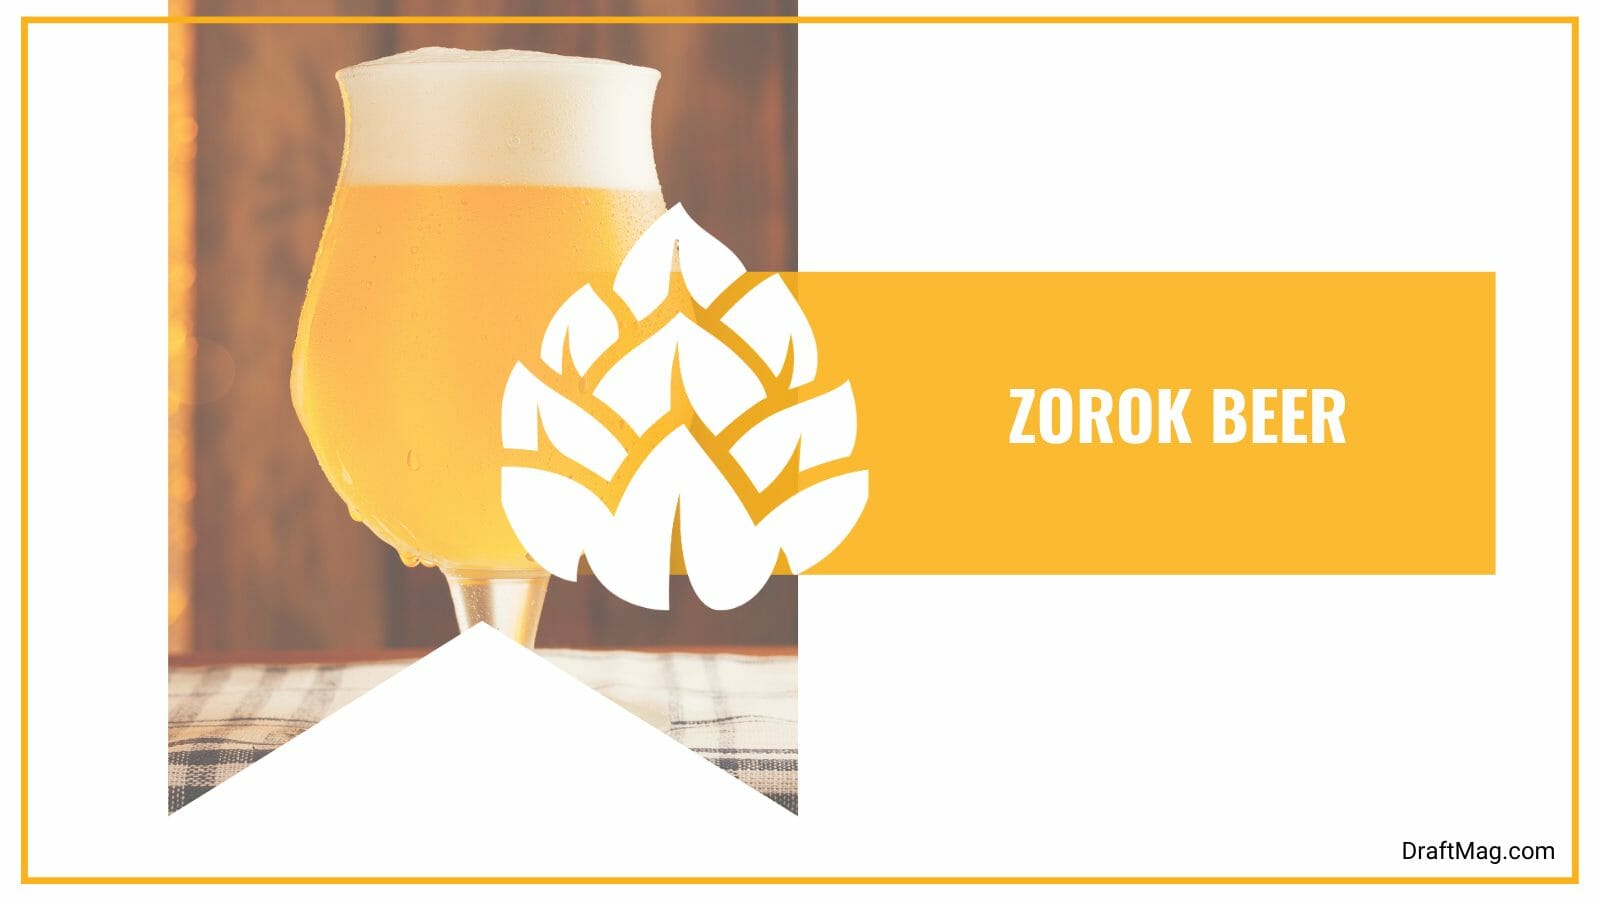 Zorok beer with herbal aromas